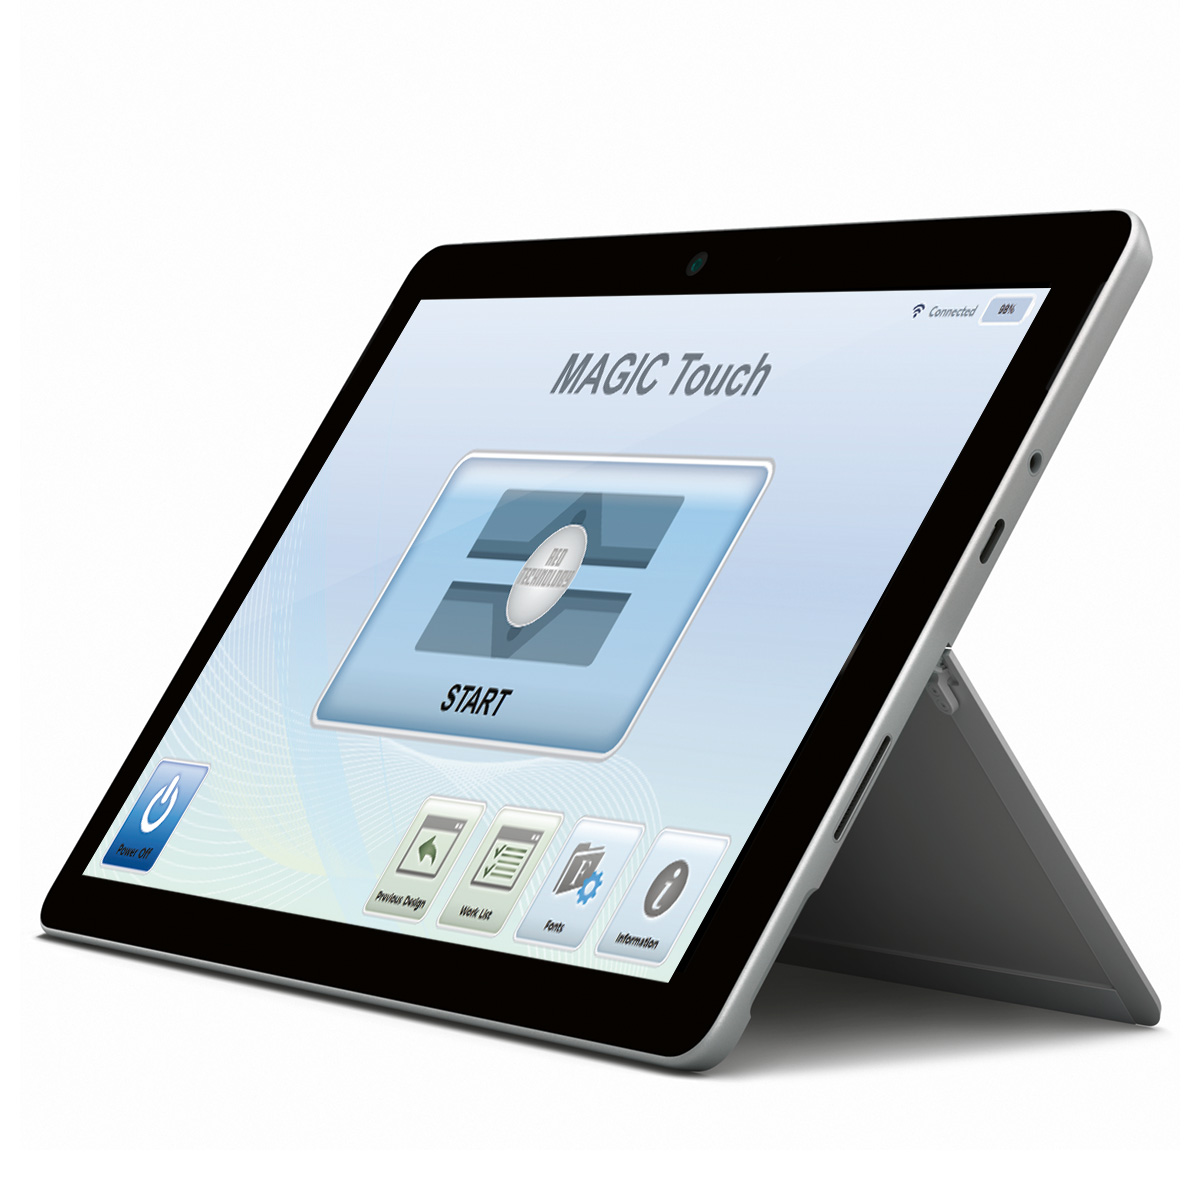 Magic Touch S10 Microsoft Surface Go für die Graviermaschinen 1S, 2S und 5S, 4GB RAM, Win 10, Model 1824